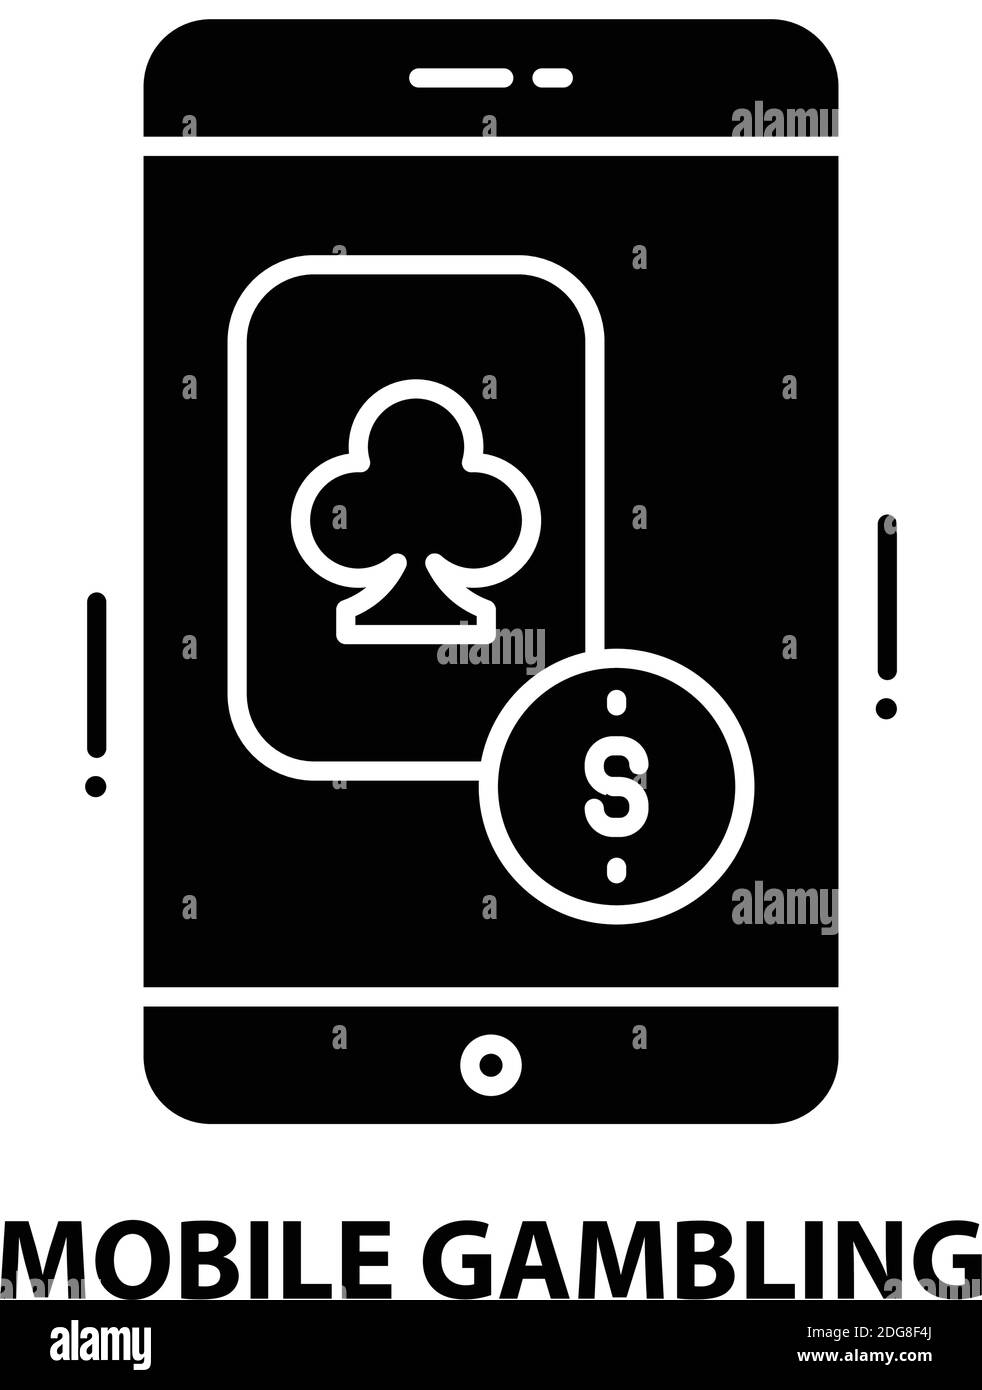 icona del gioco d'azzardo mobile, segno vettoriale nero con tratti modificabili, illustrazione del concetto Illustrazione Vettoriale